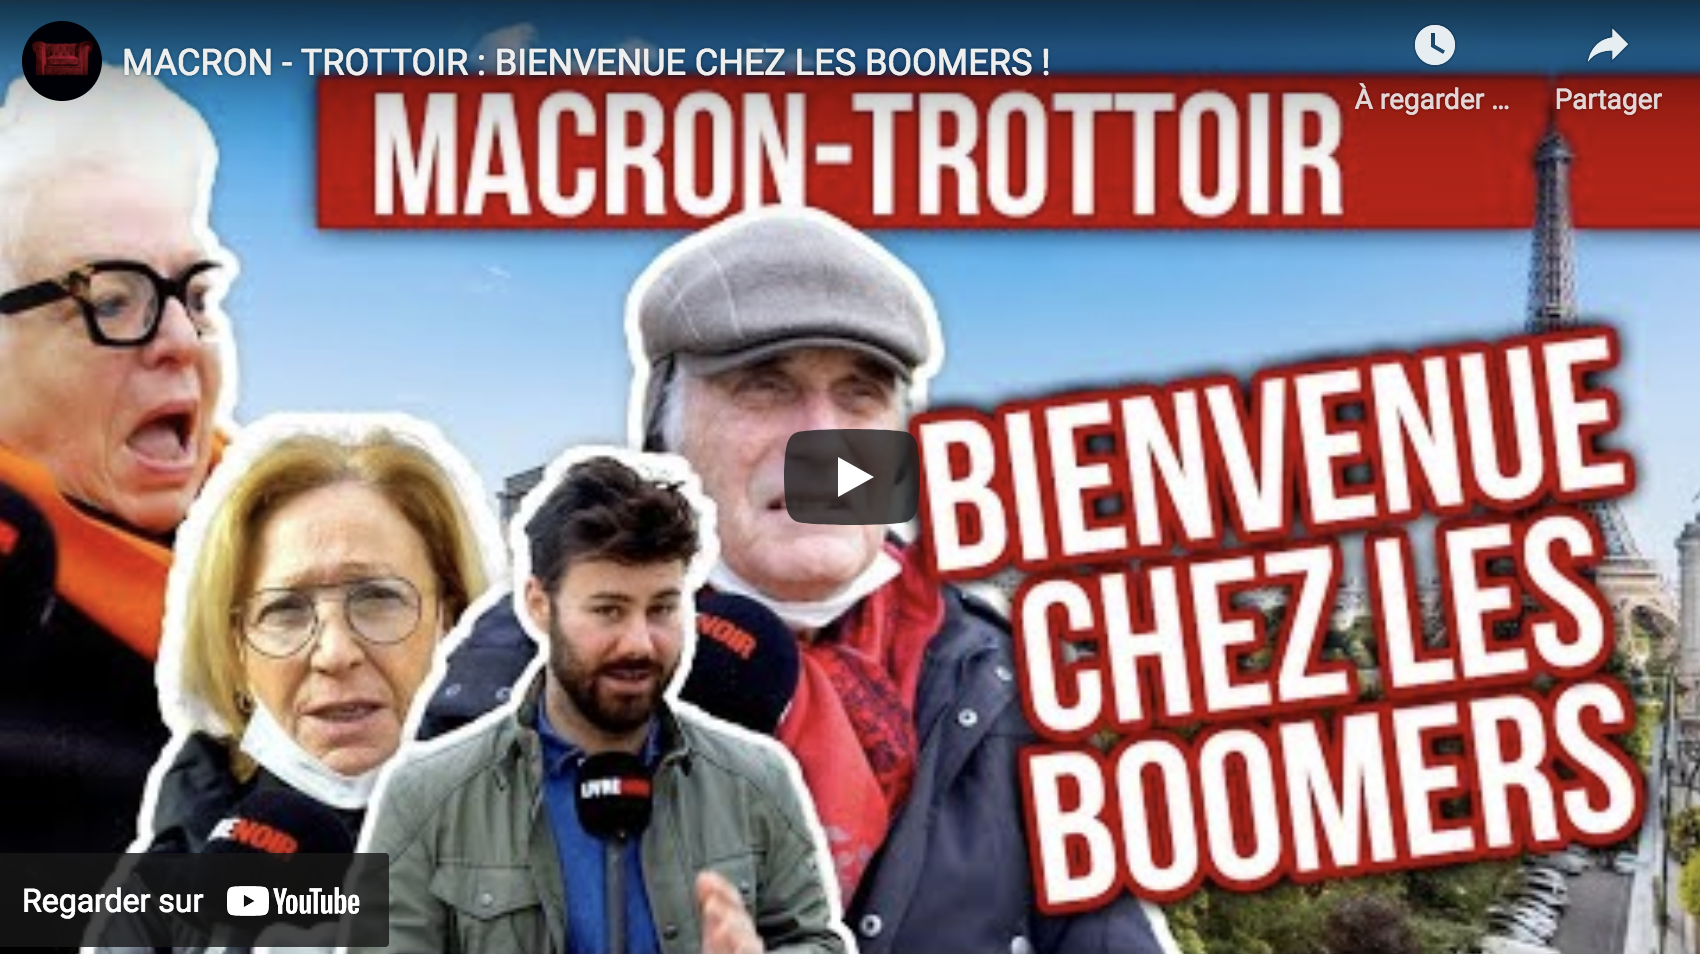 Macron-trottoir : Bienvenue chez les boomers ! (VIDÉO)